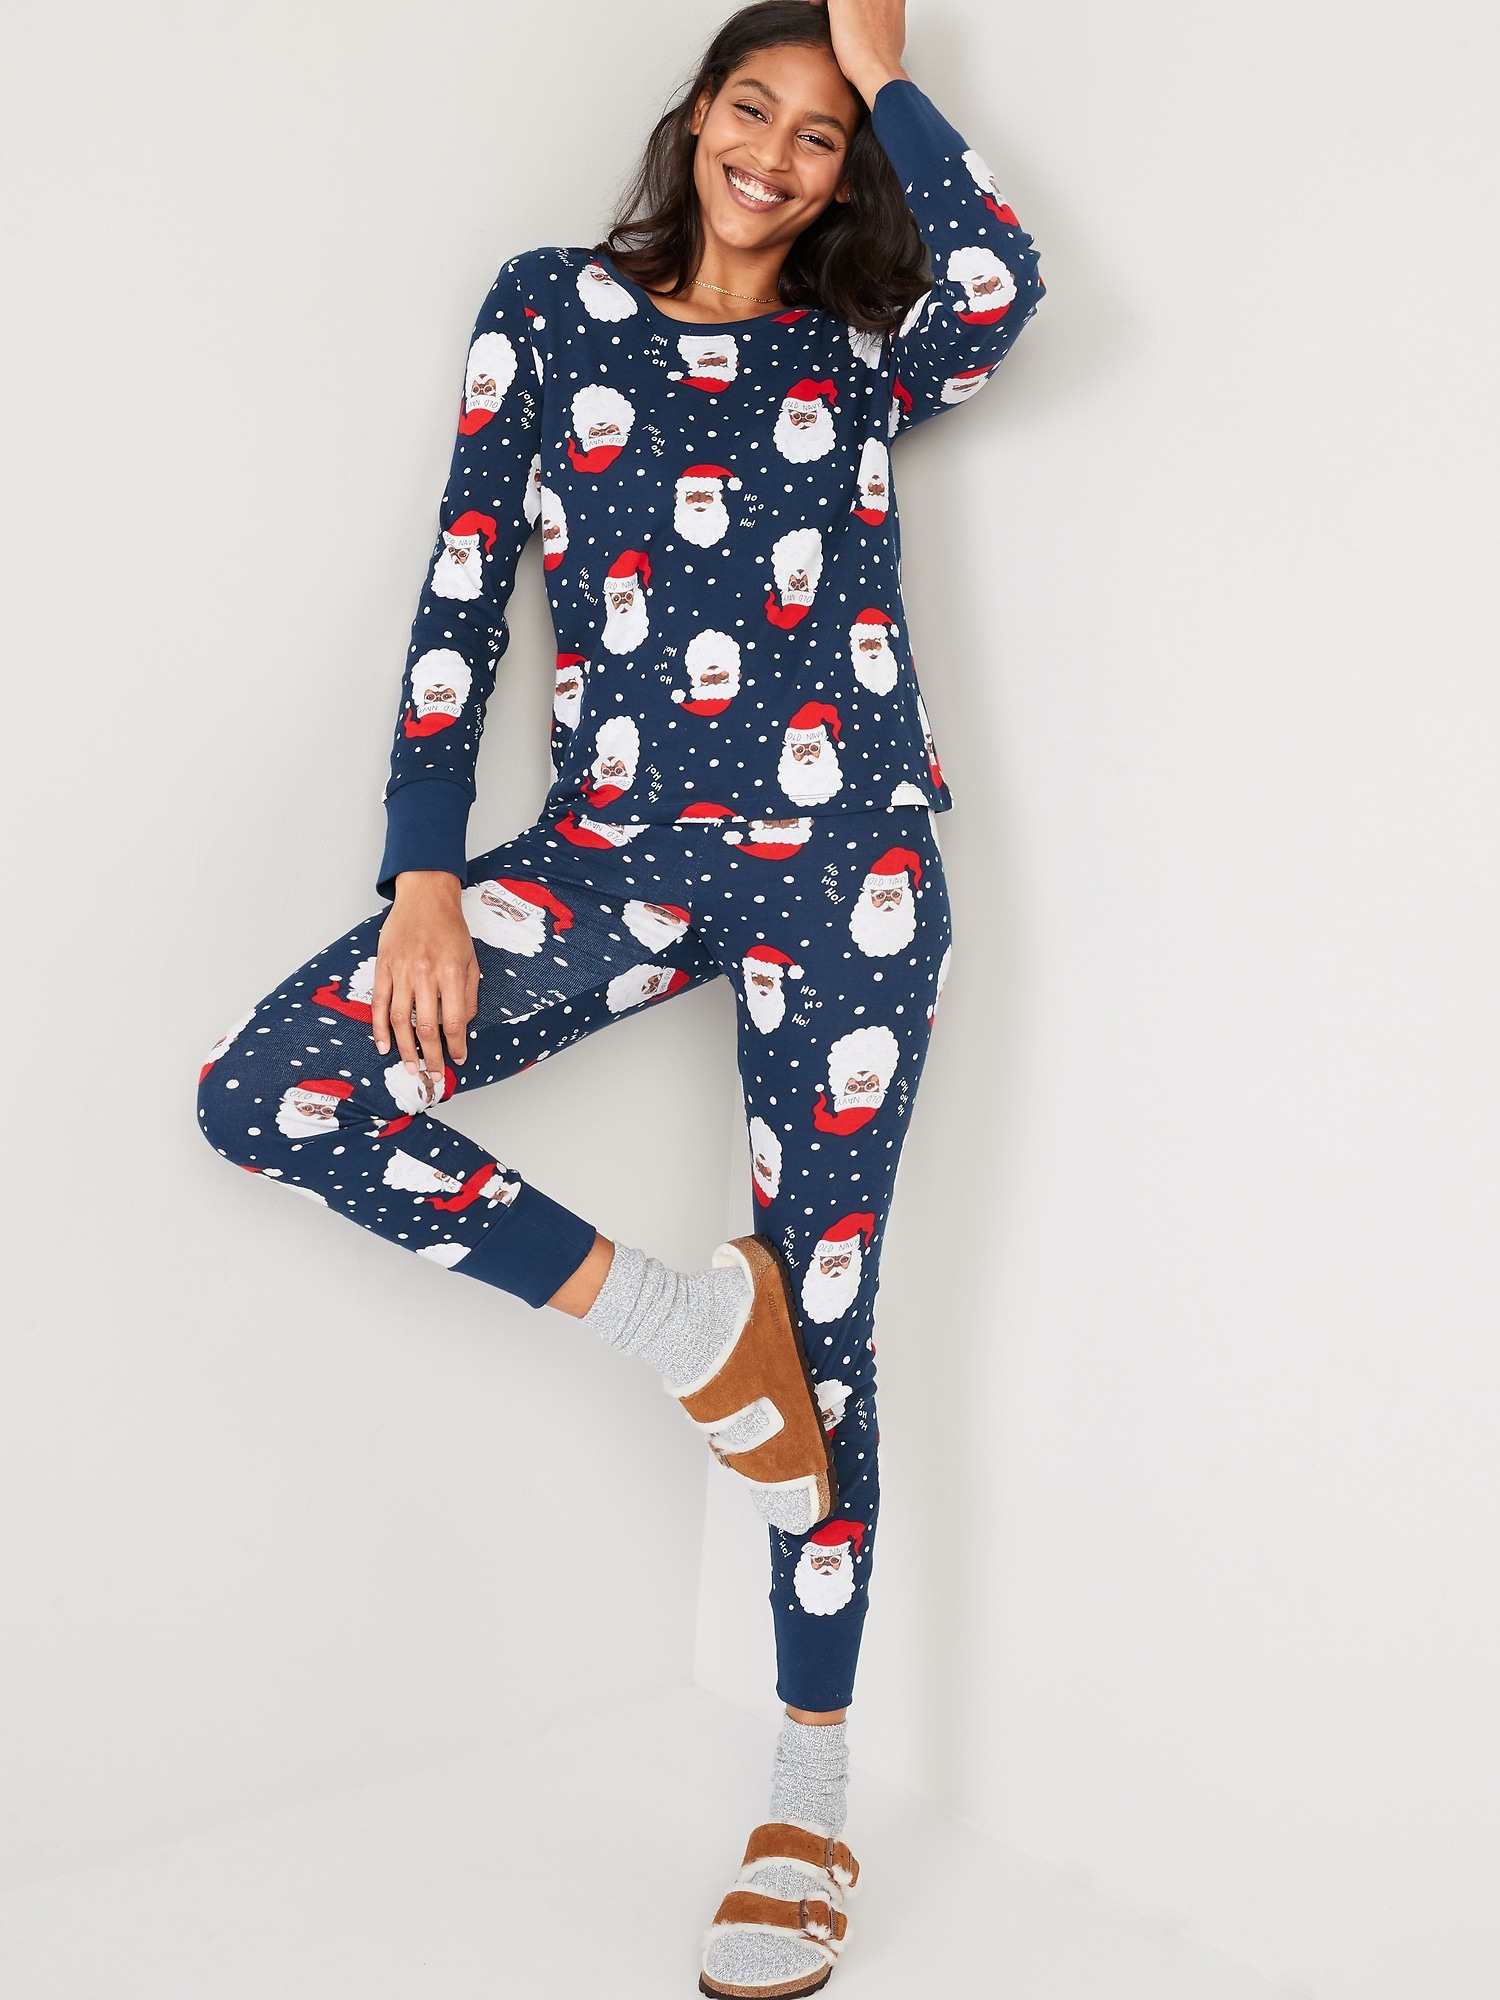 Grey Stars Legging Pyjamas | Pajamas women, Star leggings, Pajama set